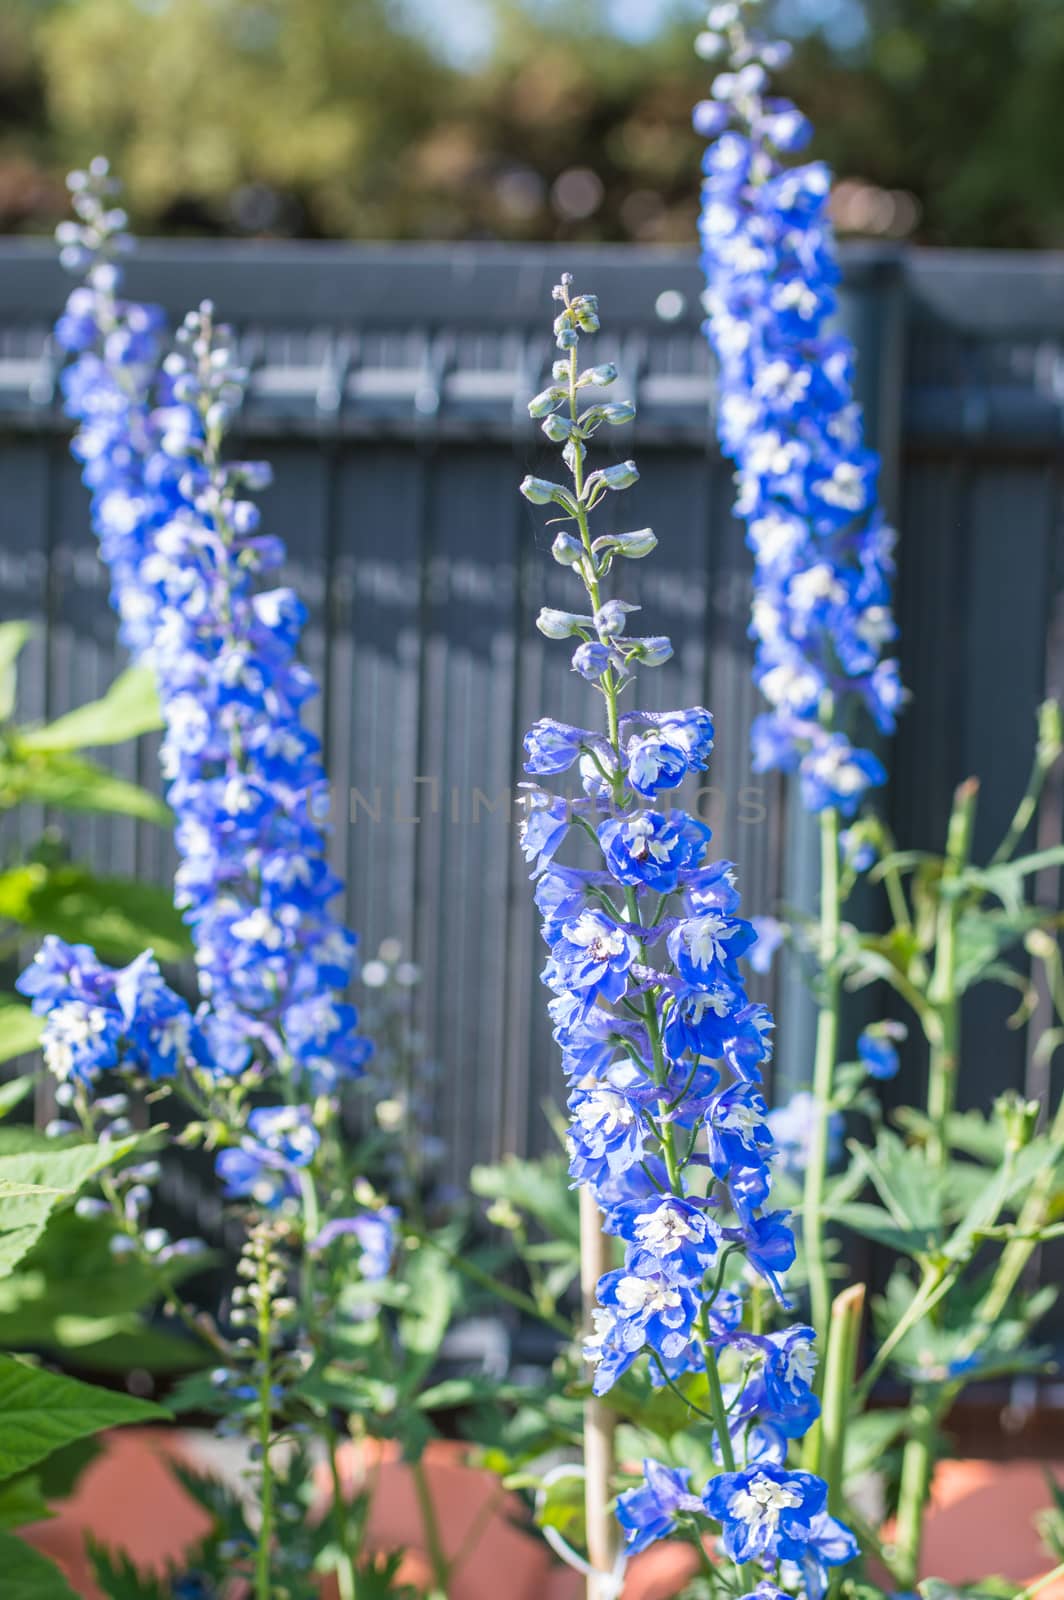 blue beautiful flowers growing in green garden